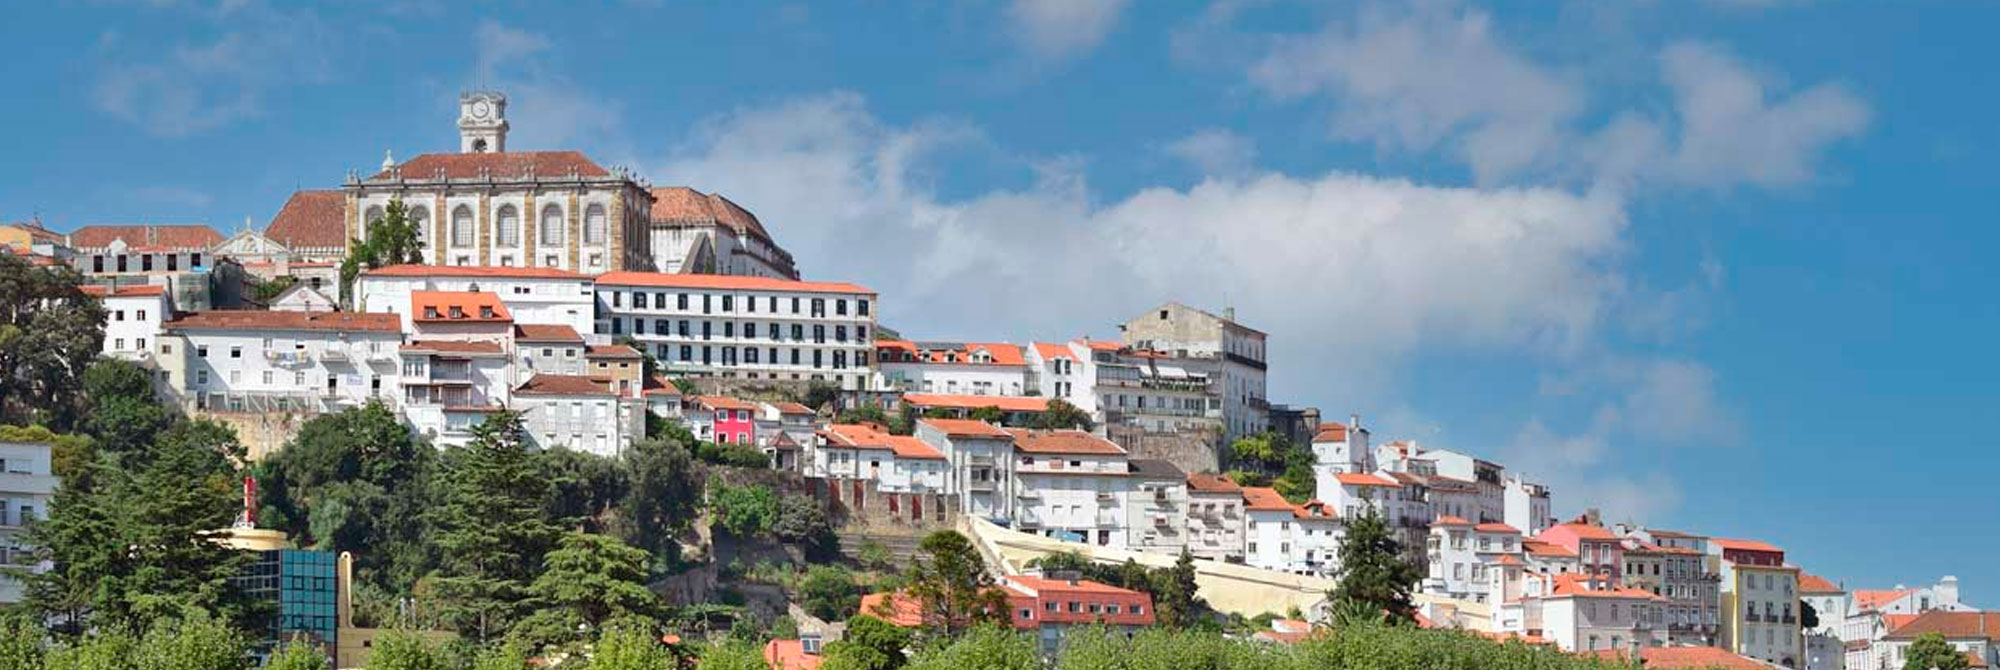 Residência Universitária de Coimbra